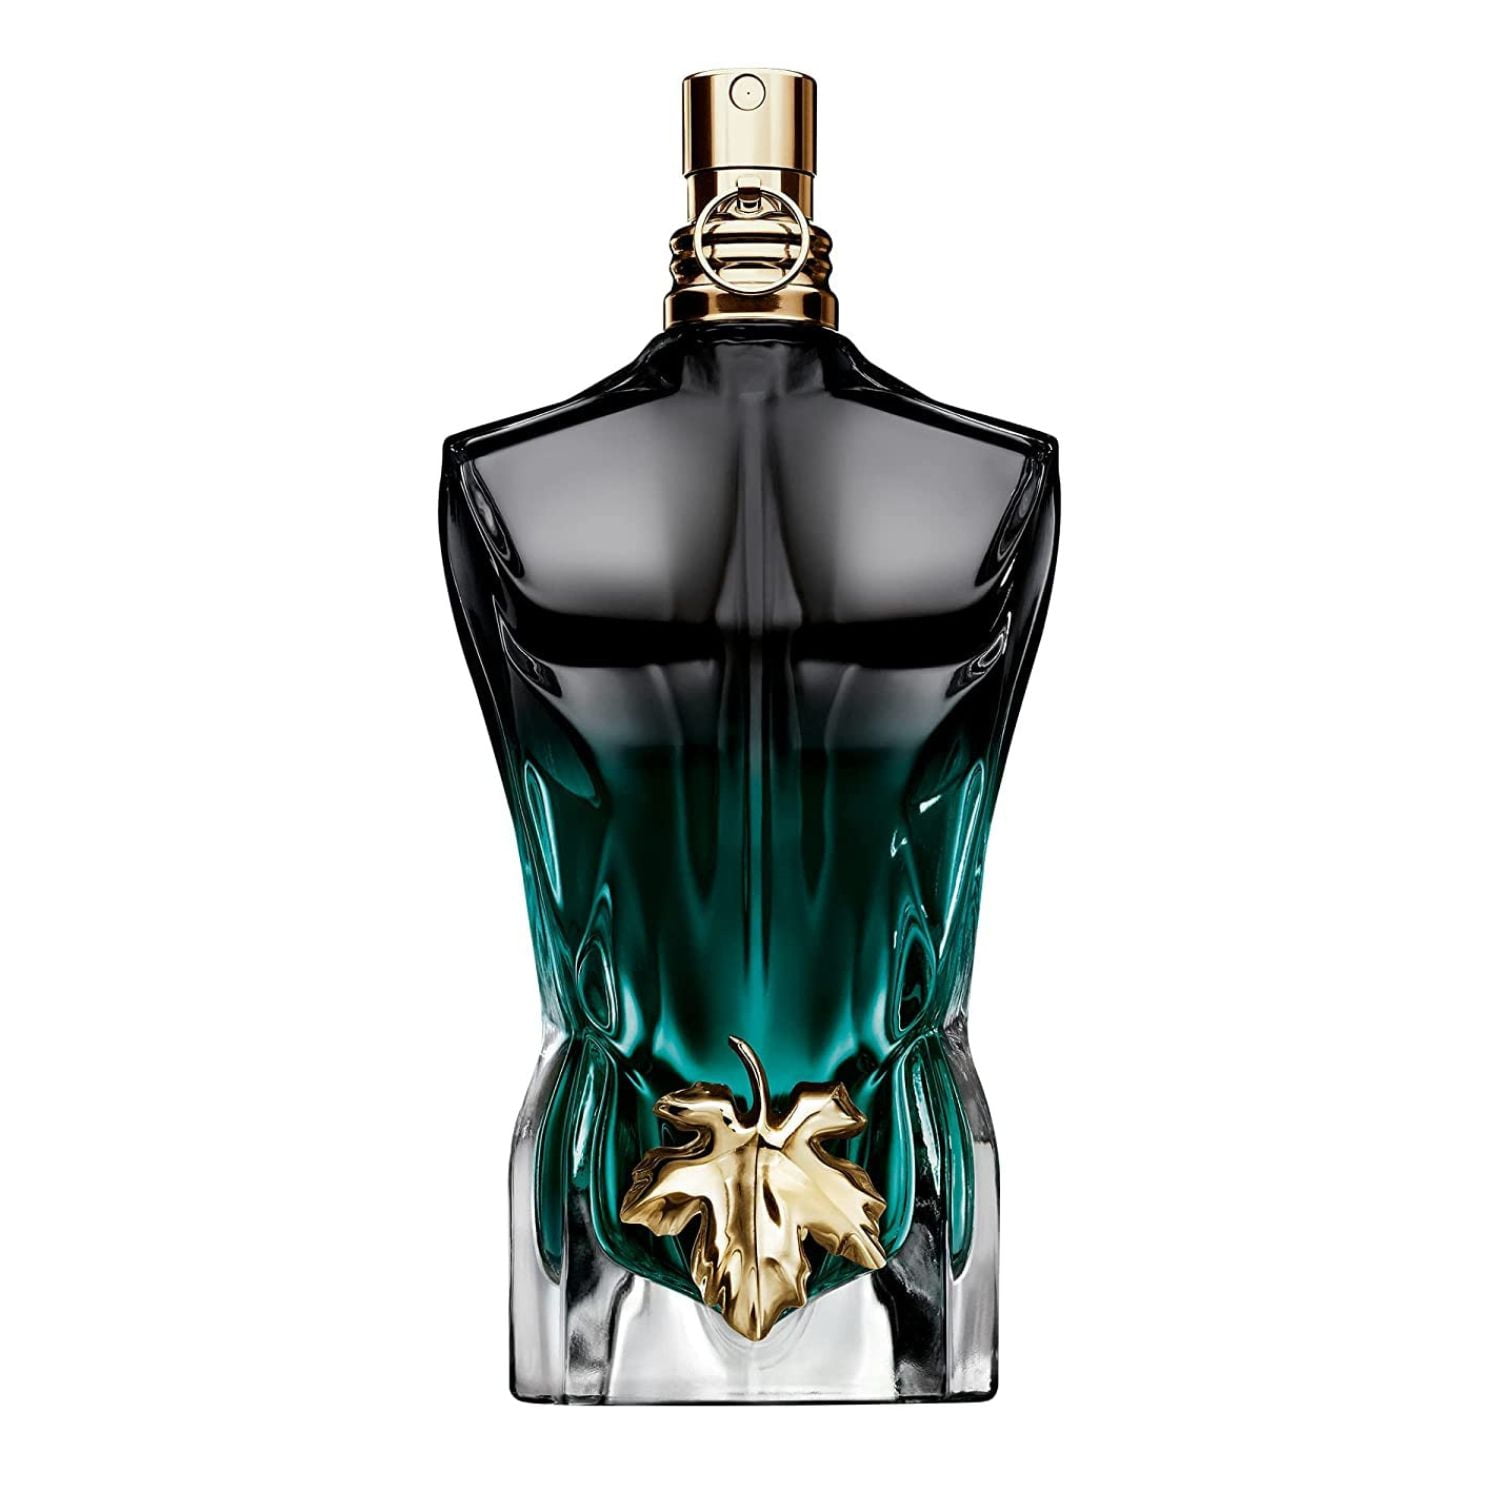 Le Beau Le Parfum by Jean Paul Gaultier » Reviews & Perfume Facts